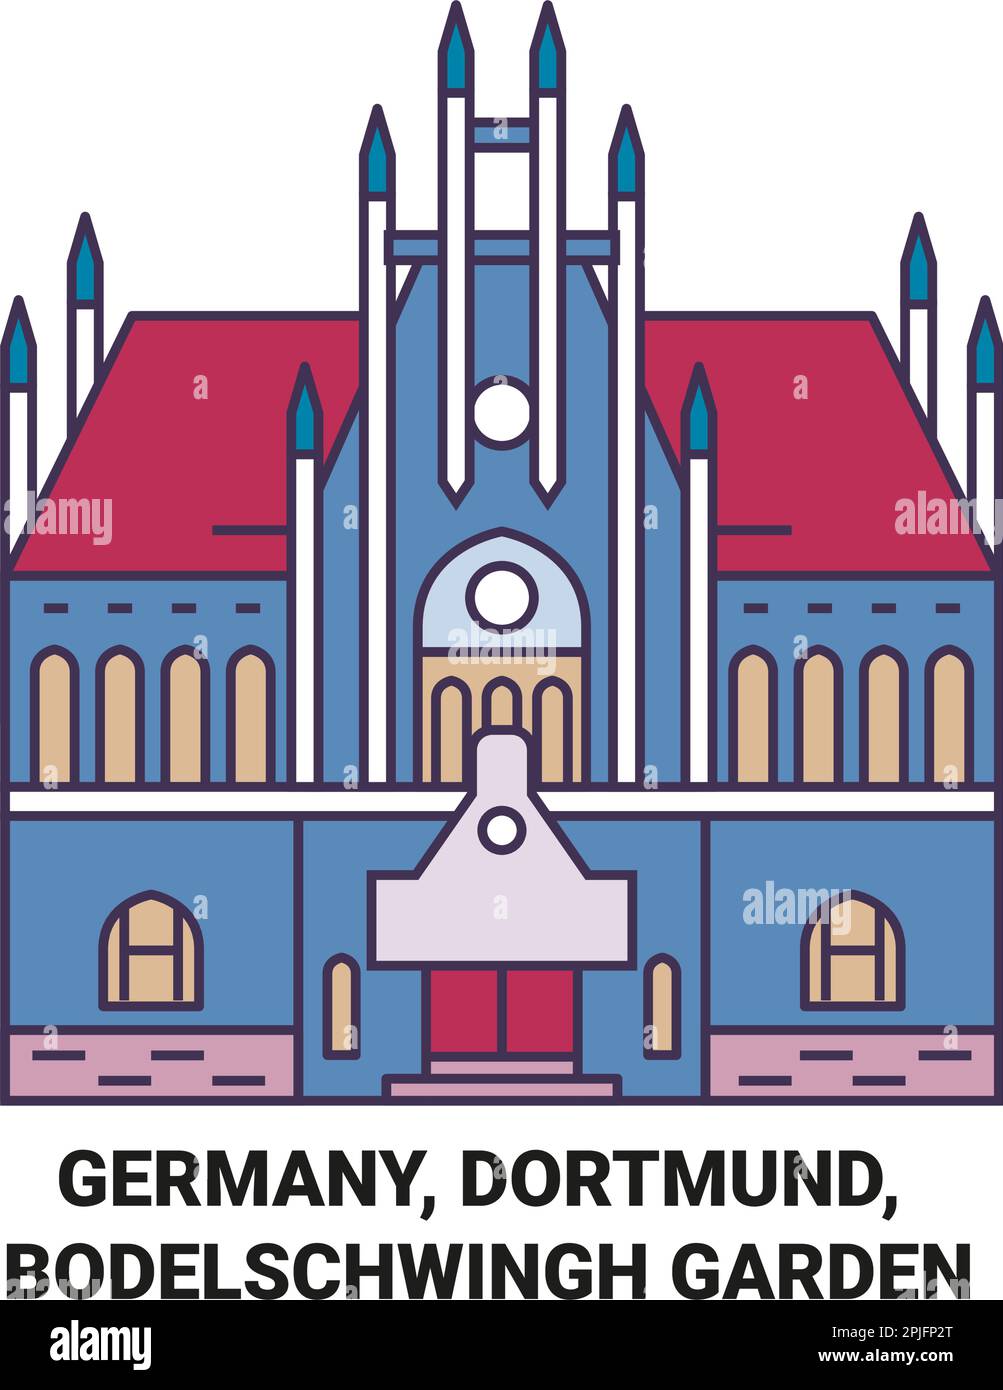 Allemagne, Dortmund, Bodelschwingh Garden Voyage illustration vectorielle Illustration de Vecteur